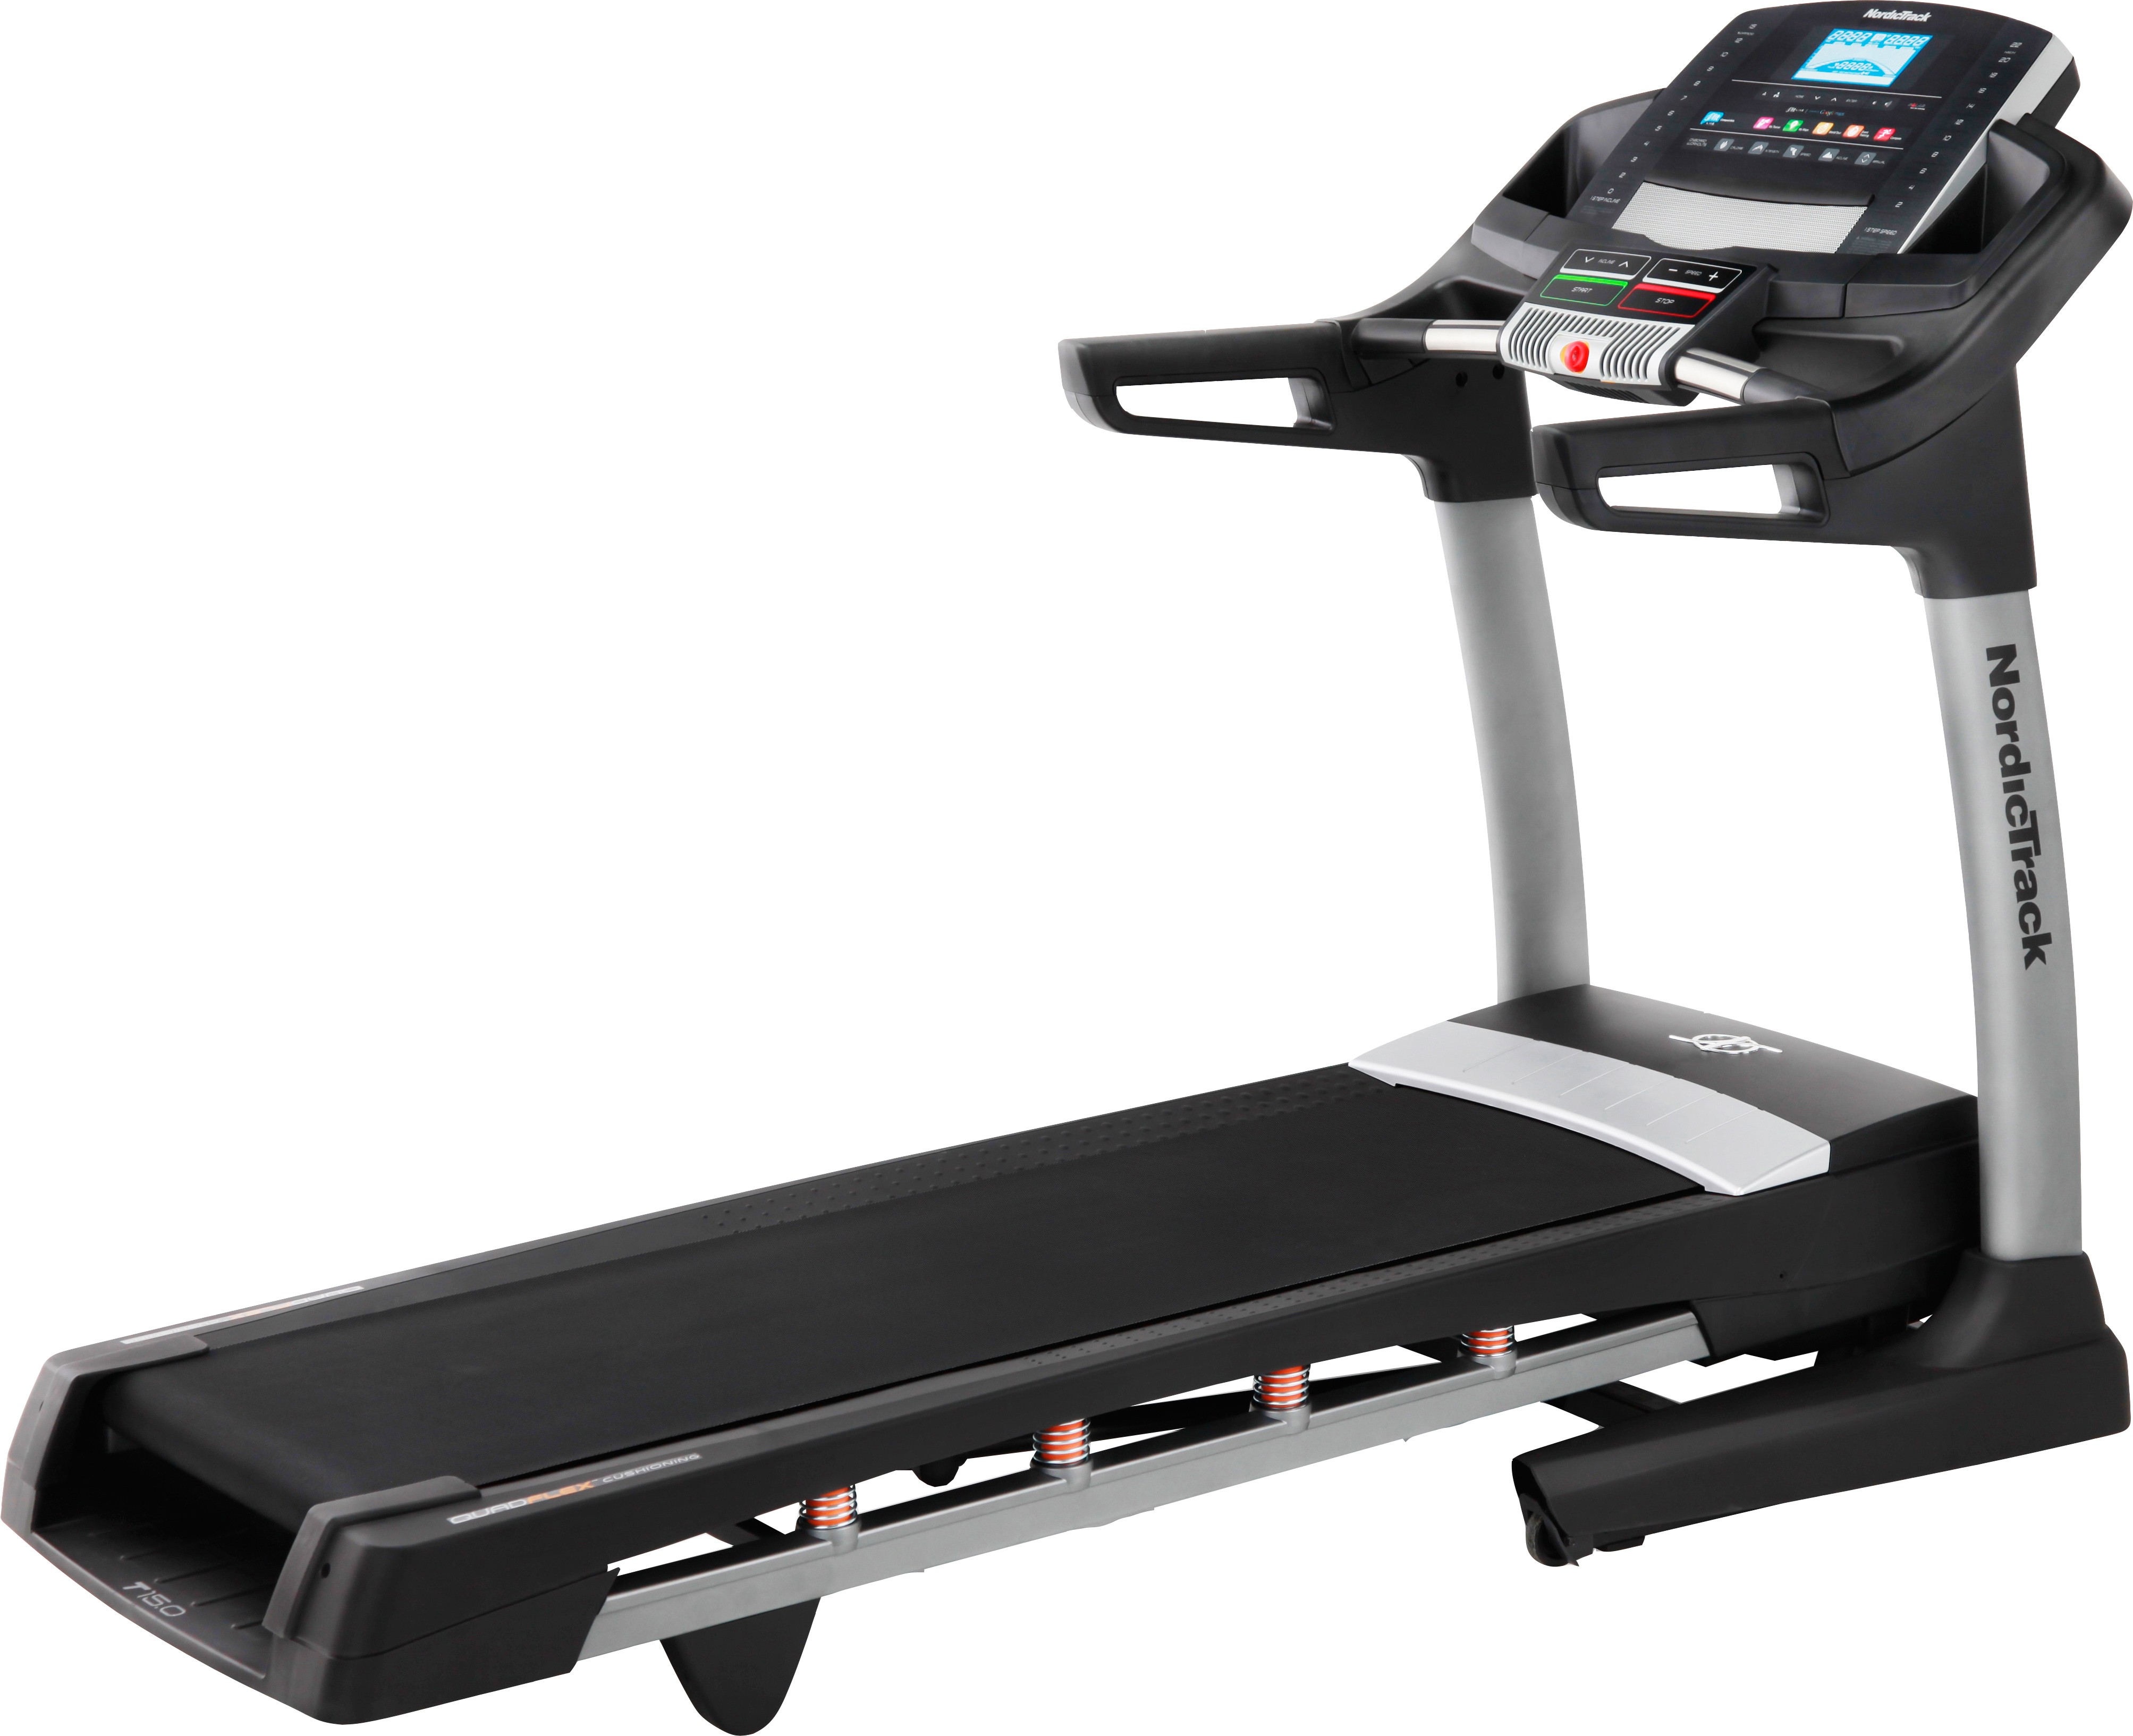 Nordic Track T15.0 Treadmill